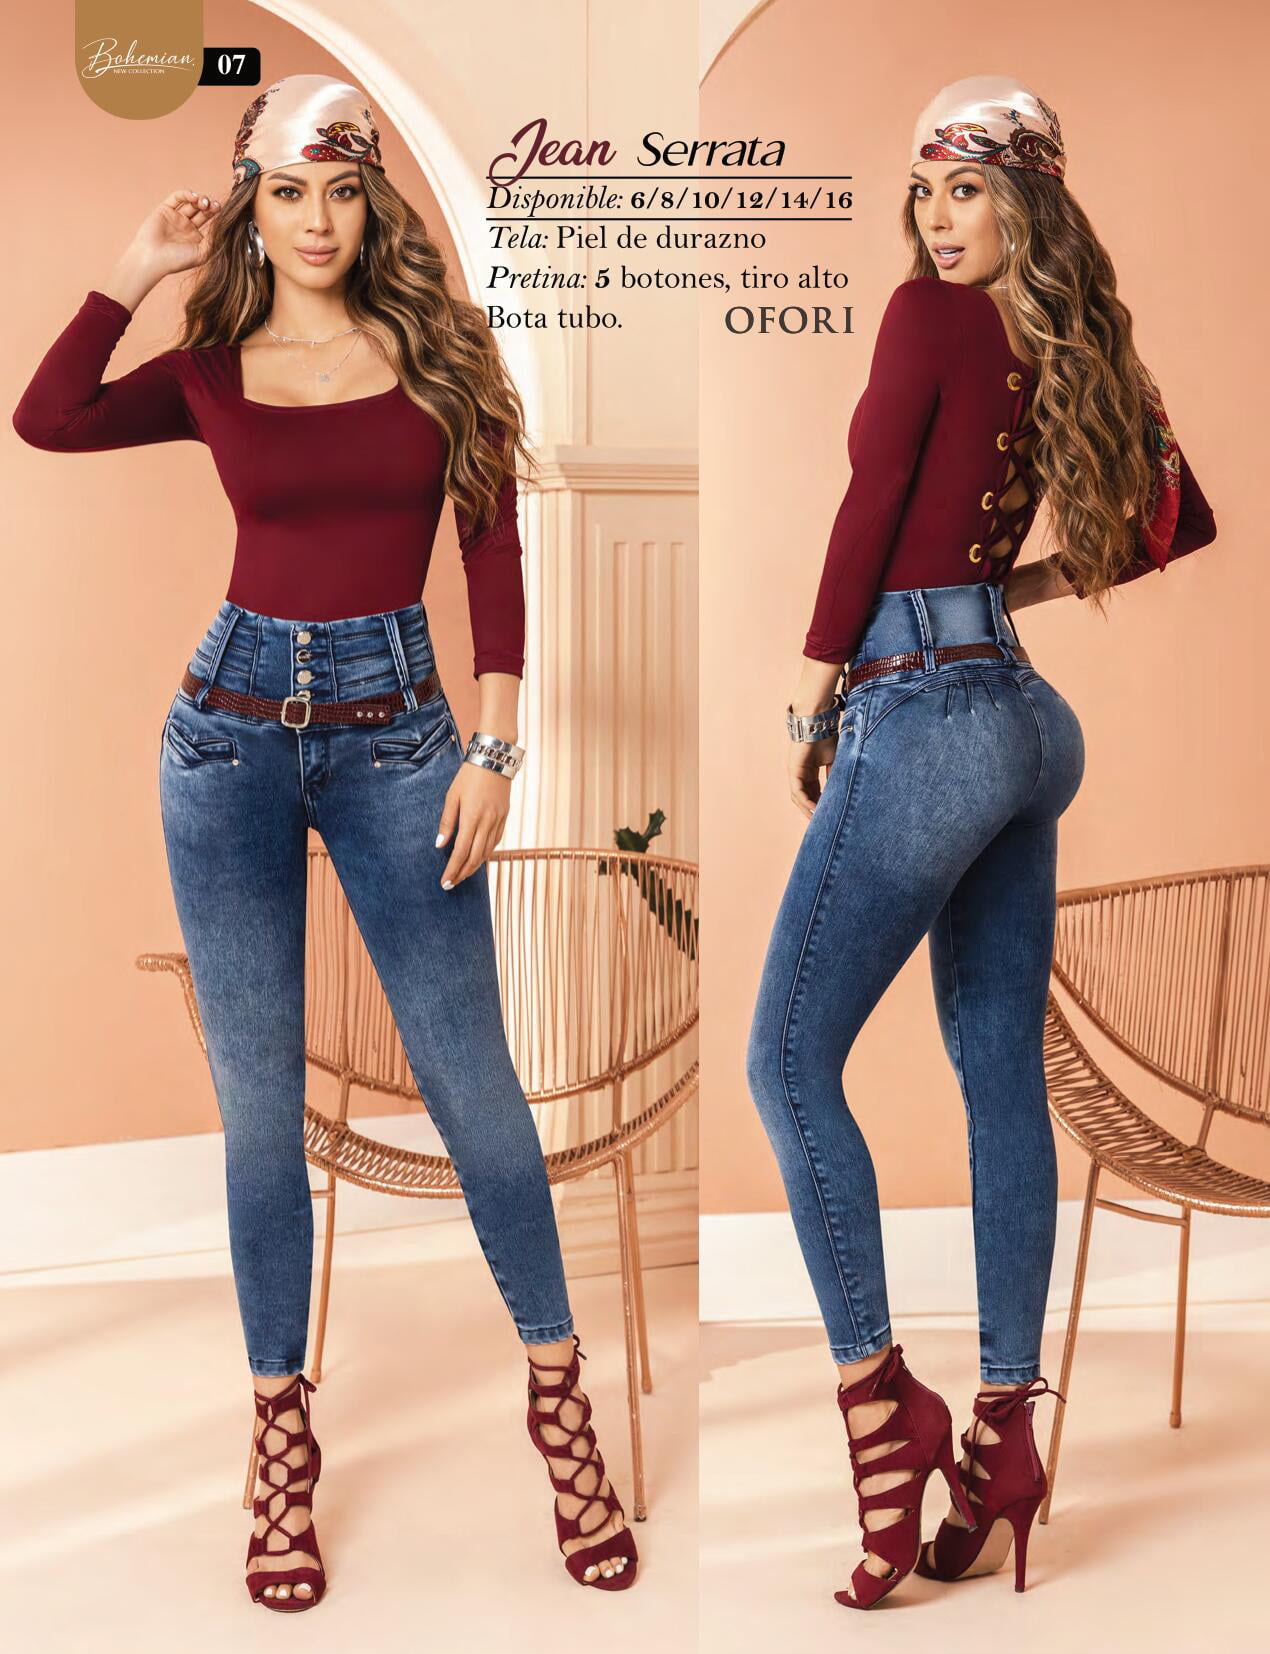 Avispón dentro de poco Empeorando Serrata 100% Authentic Colombian Push Up Jeans - Walmart.com